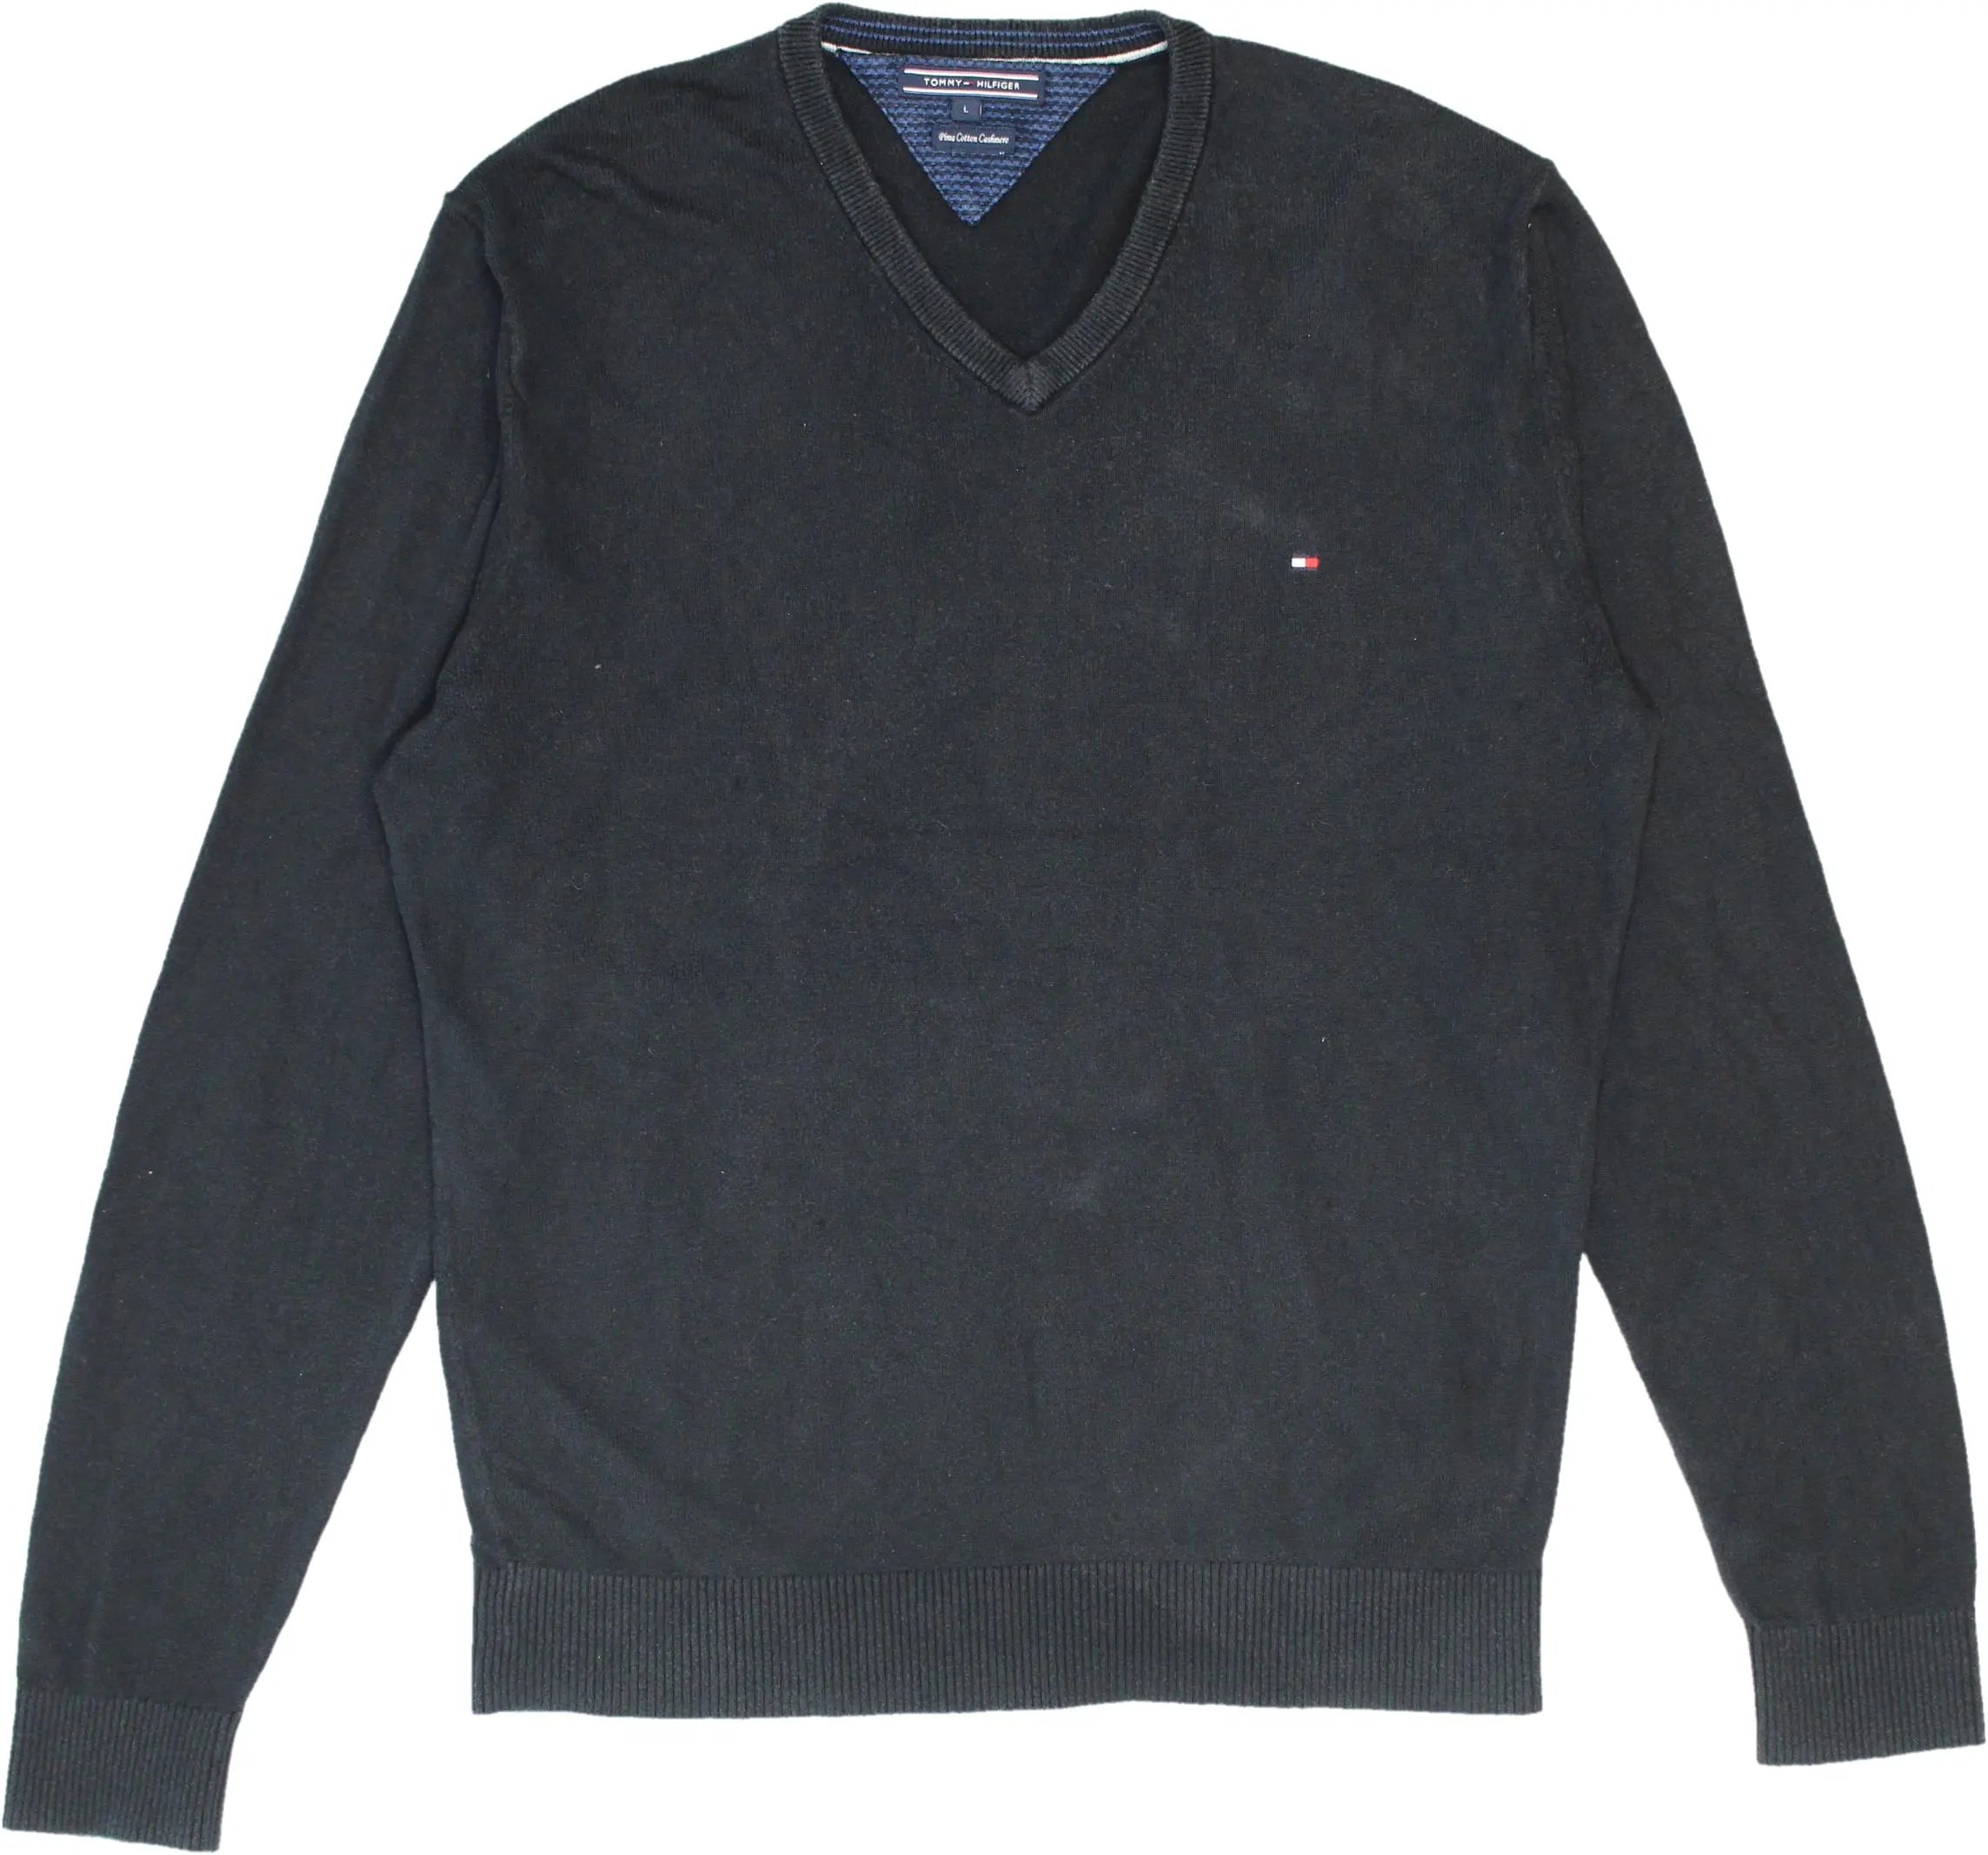 Tommy Hilfiger - Tommy Hilfiger Black V-Neck Sweater- ThriftTale.com - Vintage and second handclothing